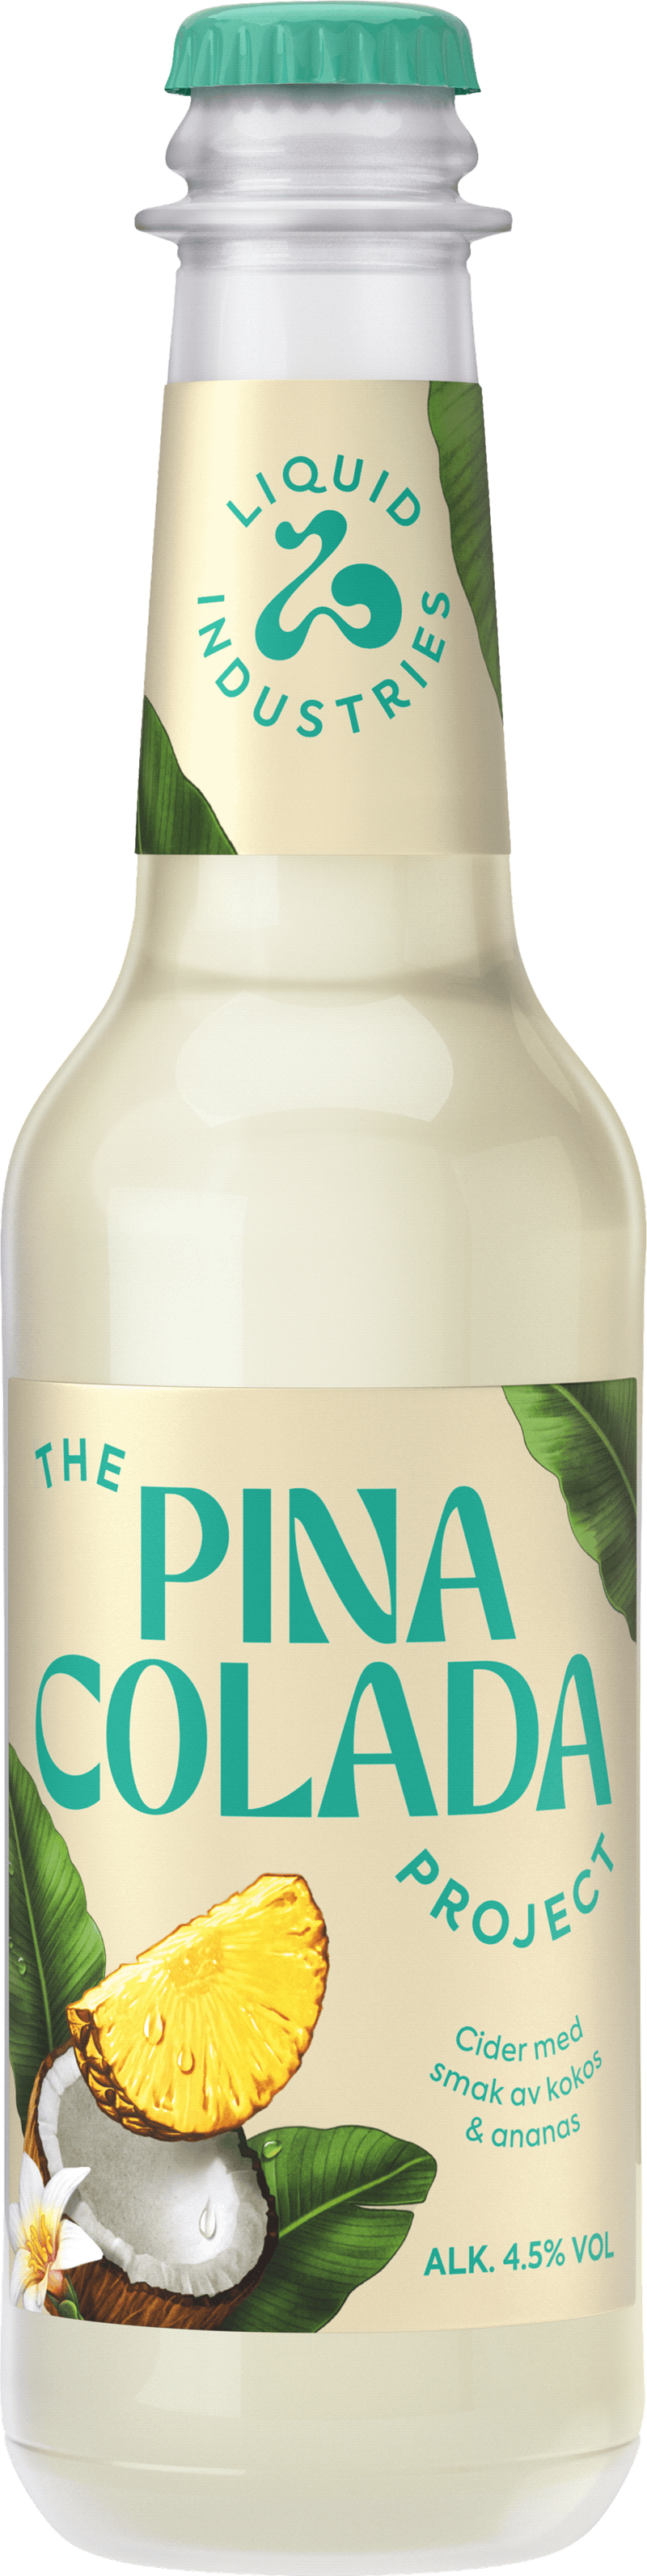 Flaska med The pina colada project som smakar kokos och ananas från Liquid industries